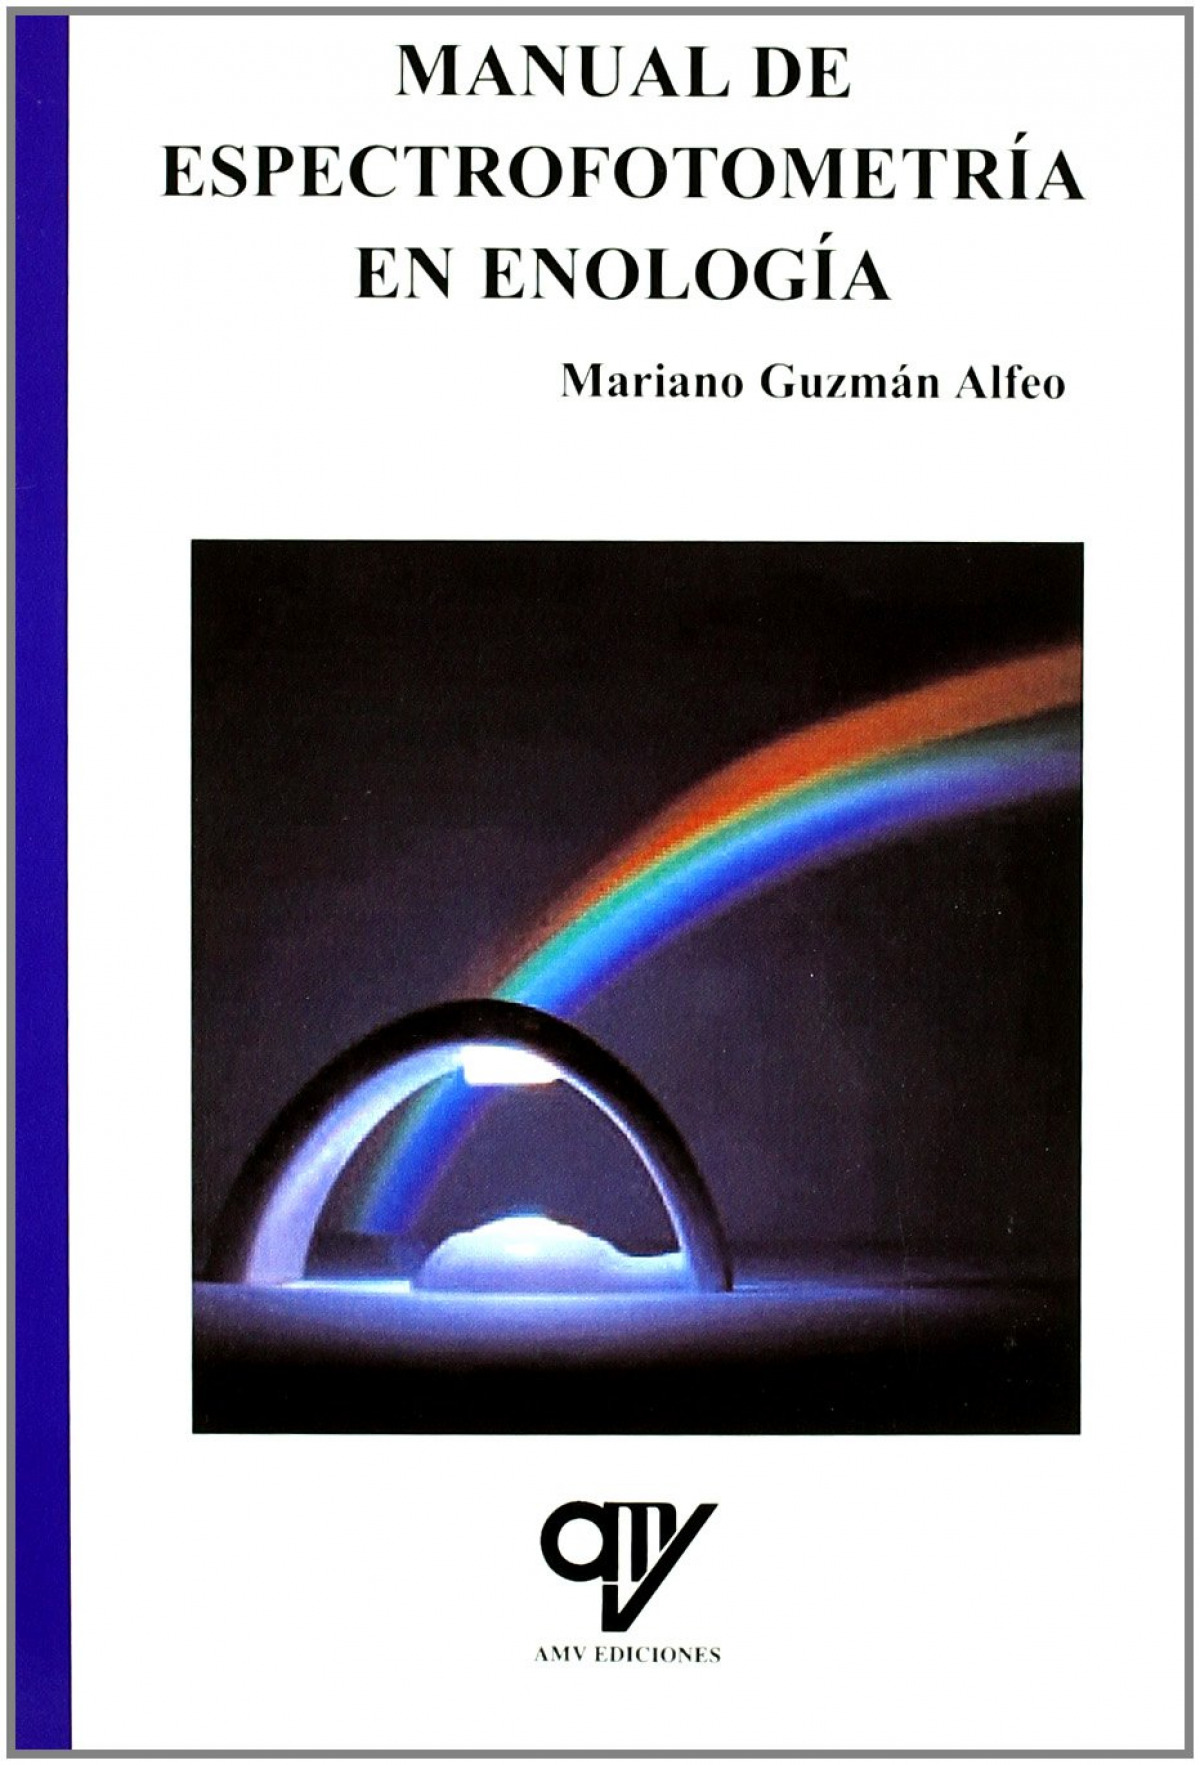 Libro: MANUAL DE ESPECTROFOTOMETRIA EN ENOLOGIA. ISBN: 9788496709546 - - Guzmán Alfeo, Mariano